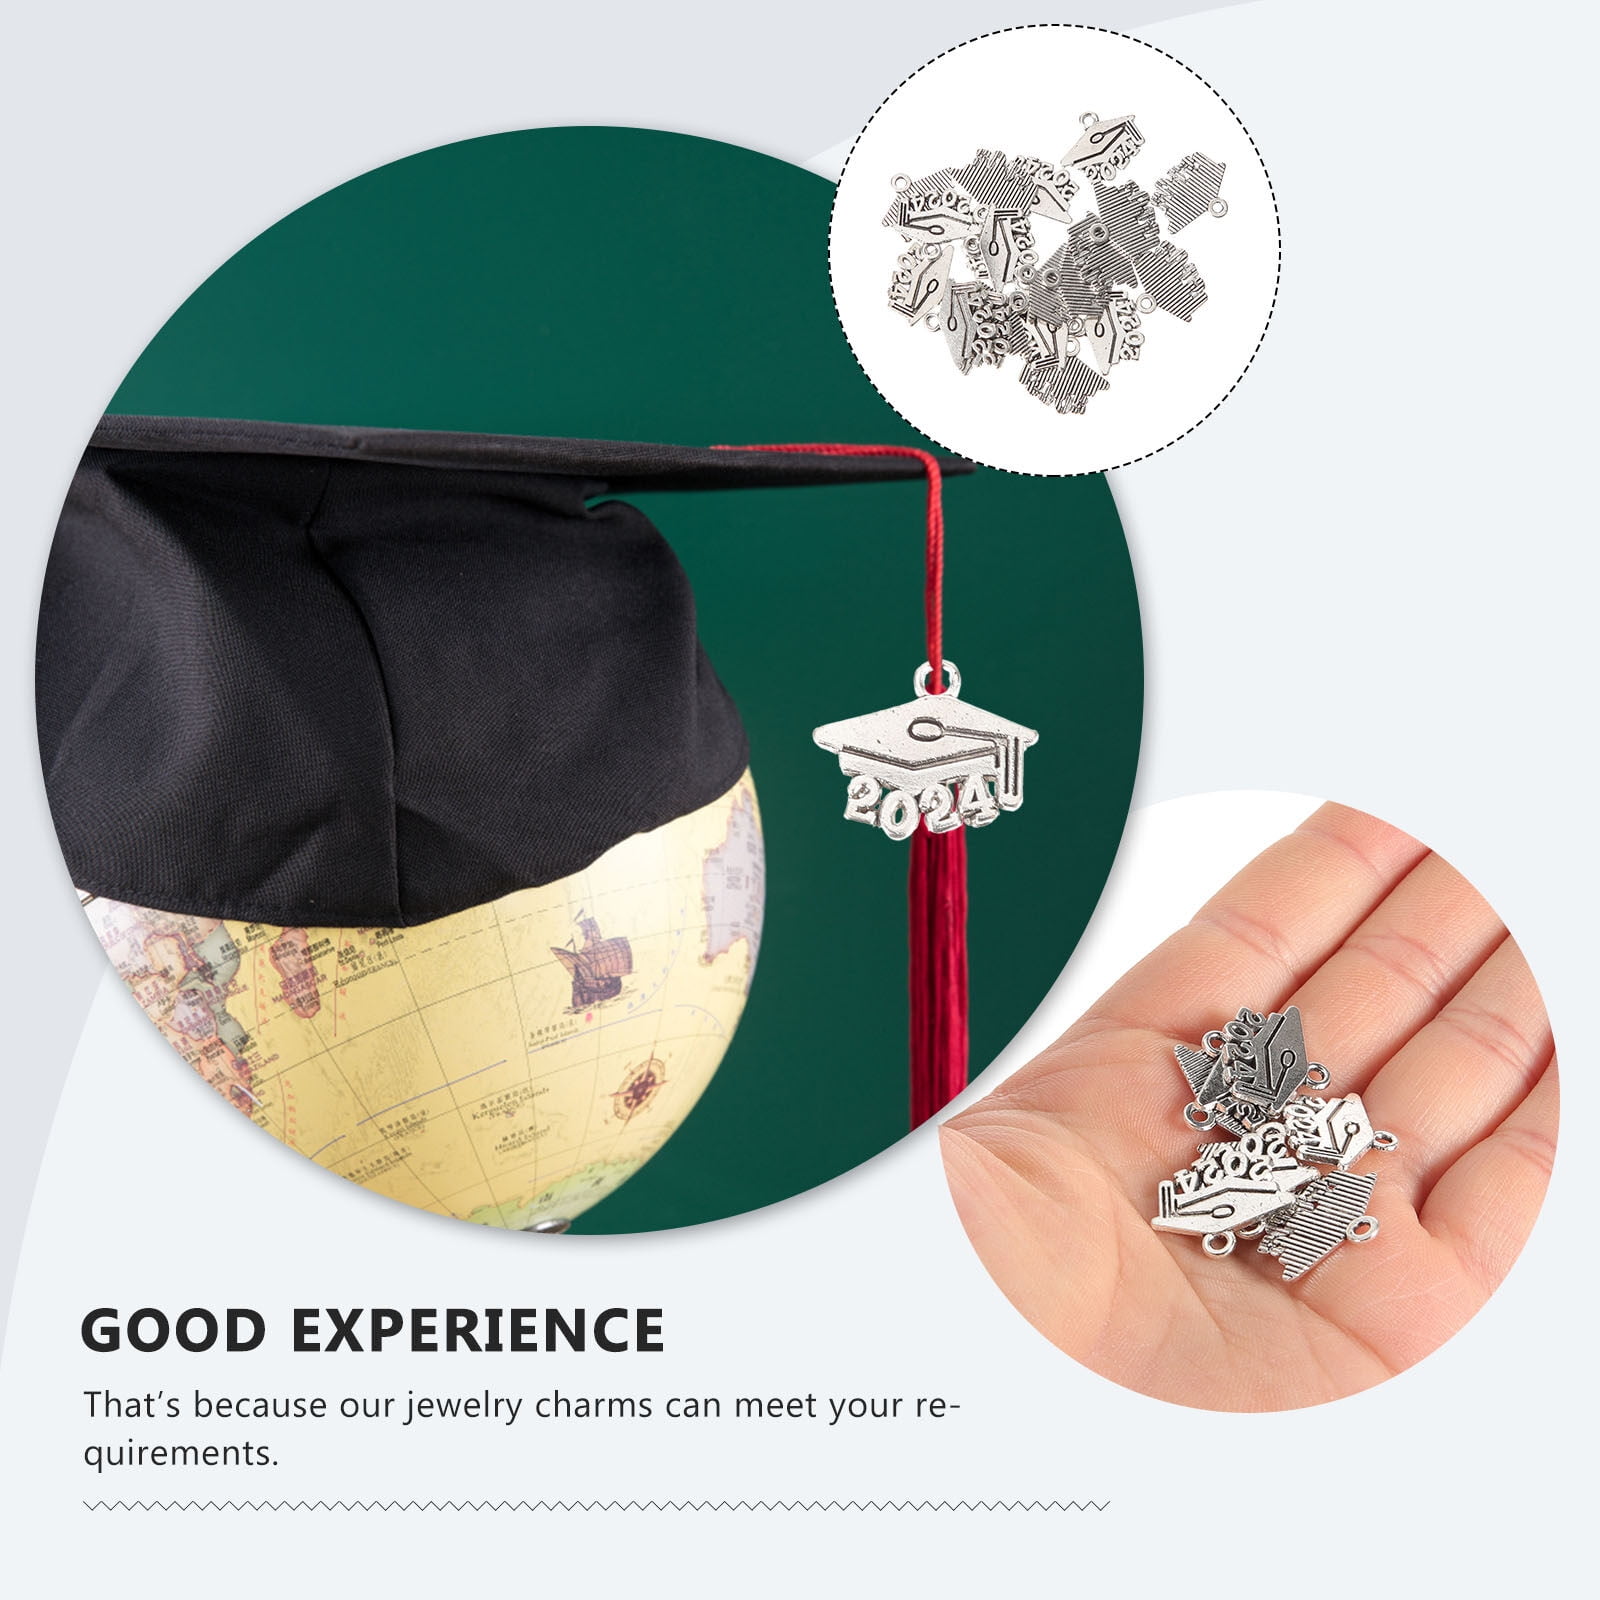 20Pcs Graduate 2024 Charms Metal Pendants Graduation Bachelor Cap Jewelry  Charms for Necklaces Bracelet Jewelry Accessories